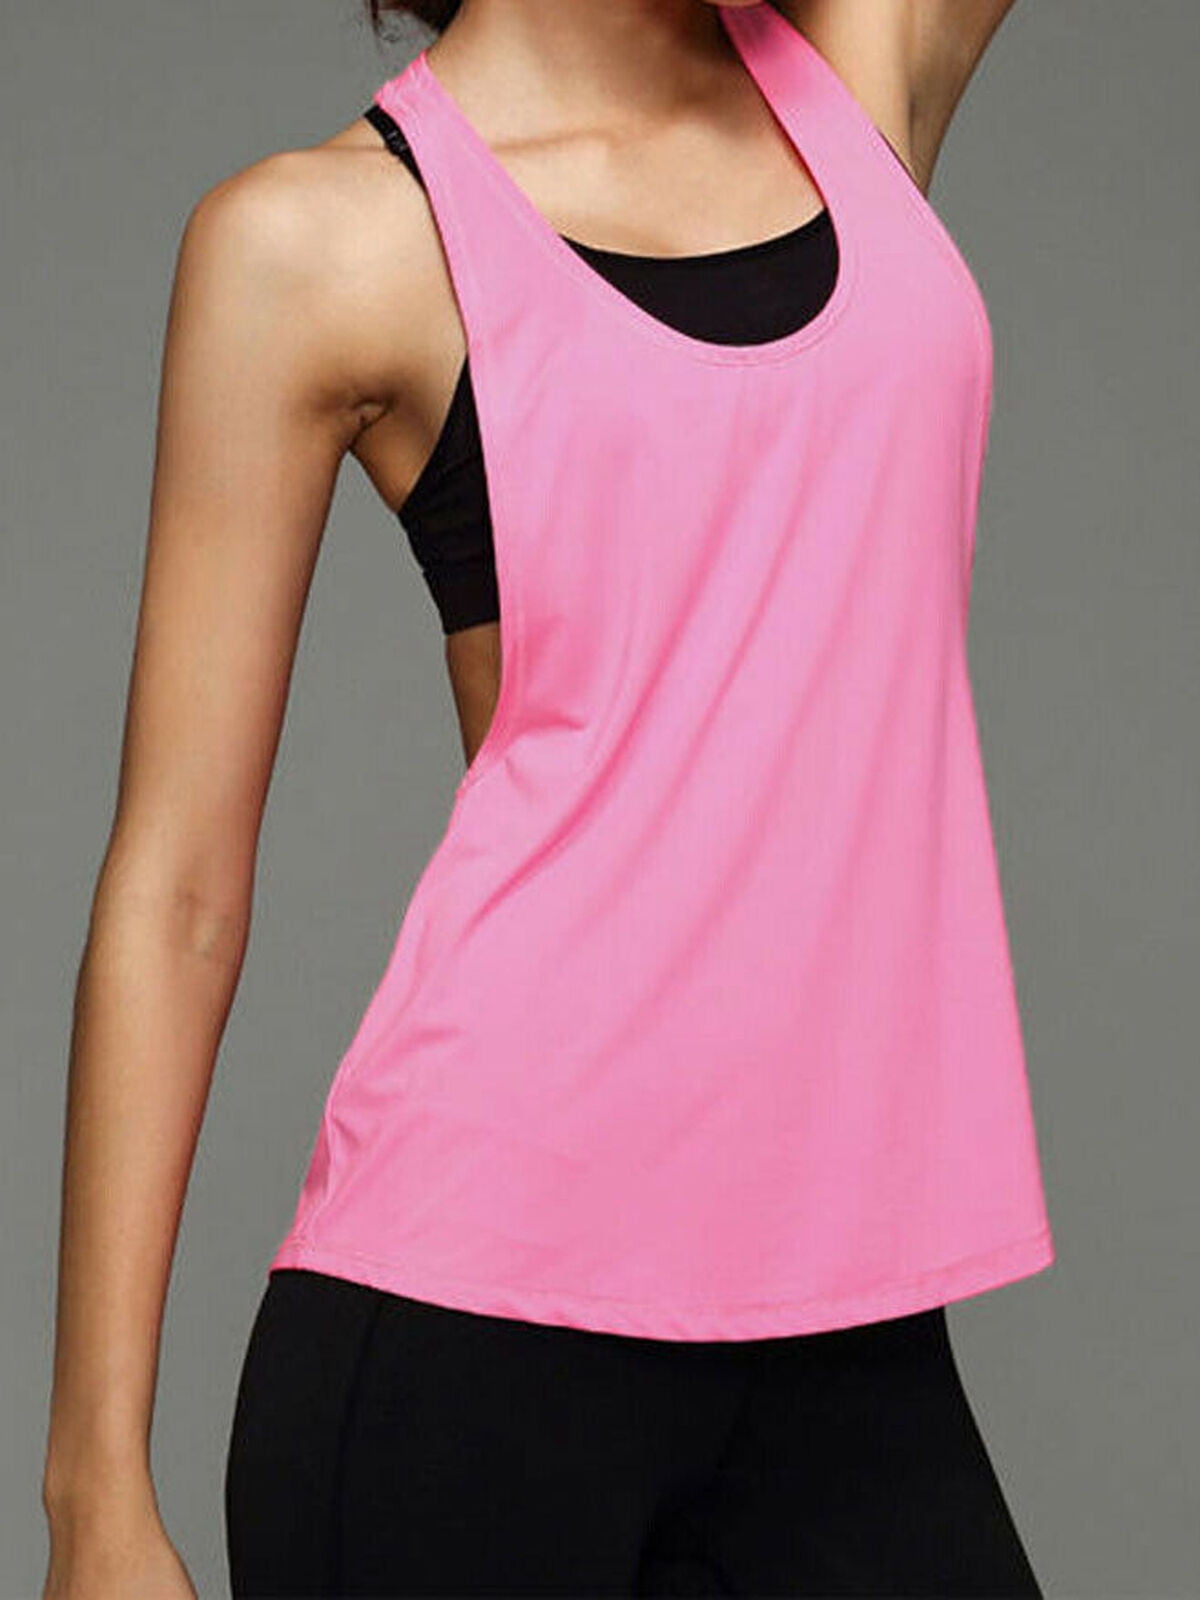 Holzkary Womens Cross Back Yoga Shirt Workout Racerback Tank Tops Open Back Running Tanks Vest